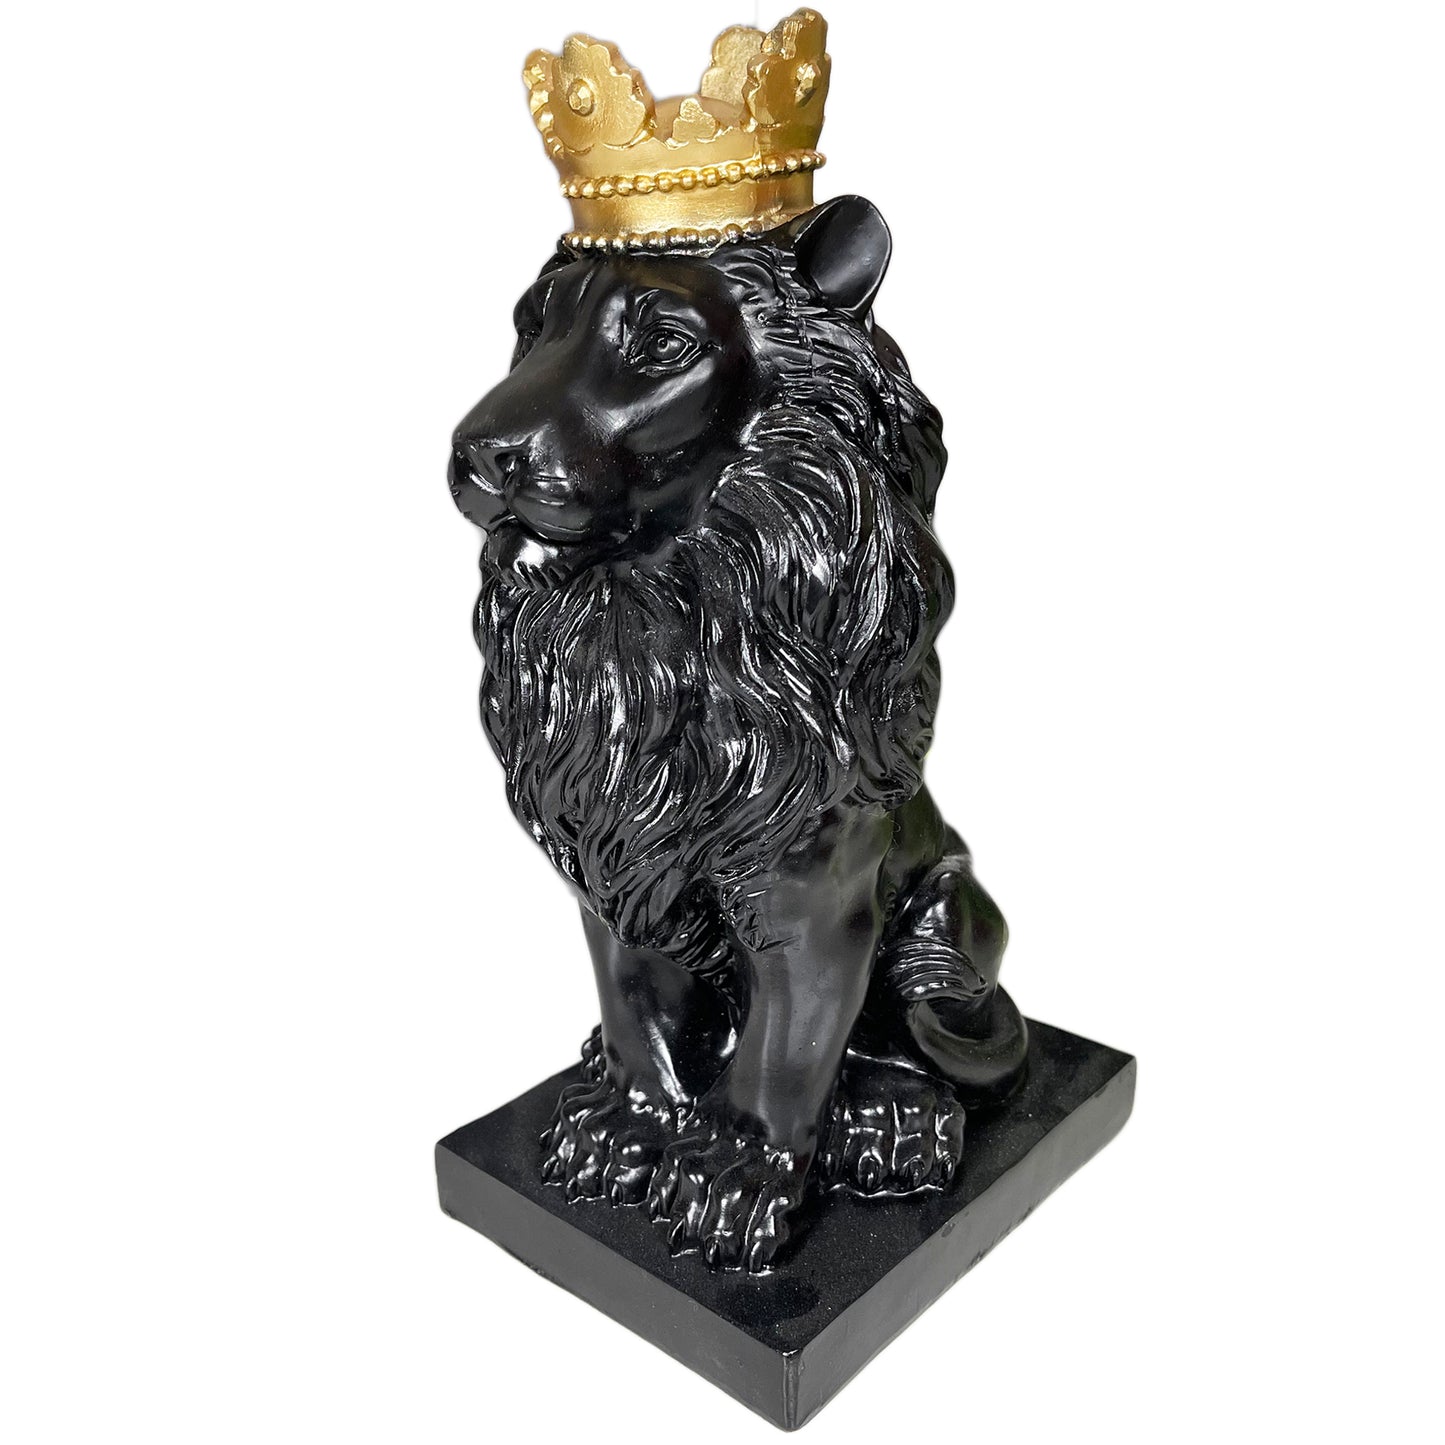 Schwarzer königlicher Löwe mit Goldkronenstatue